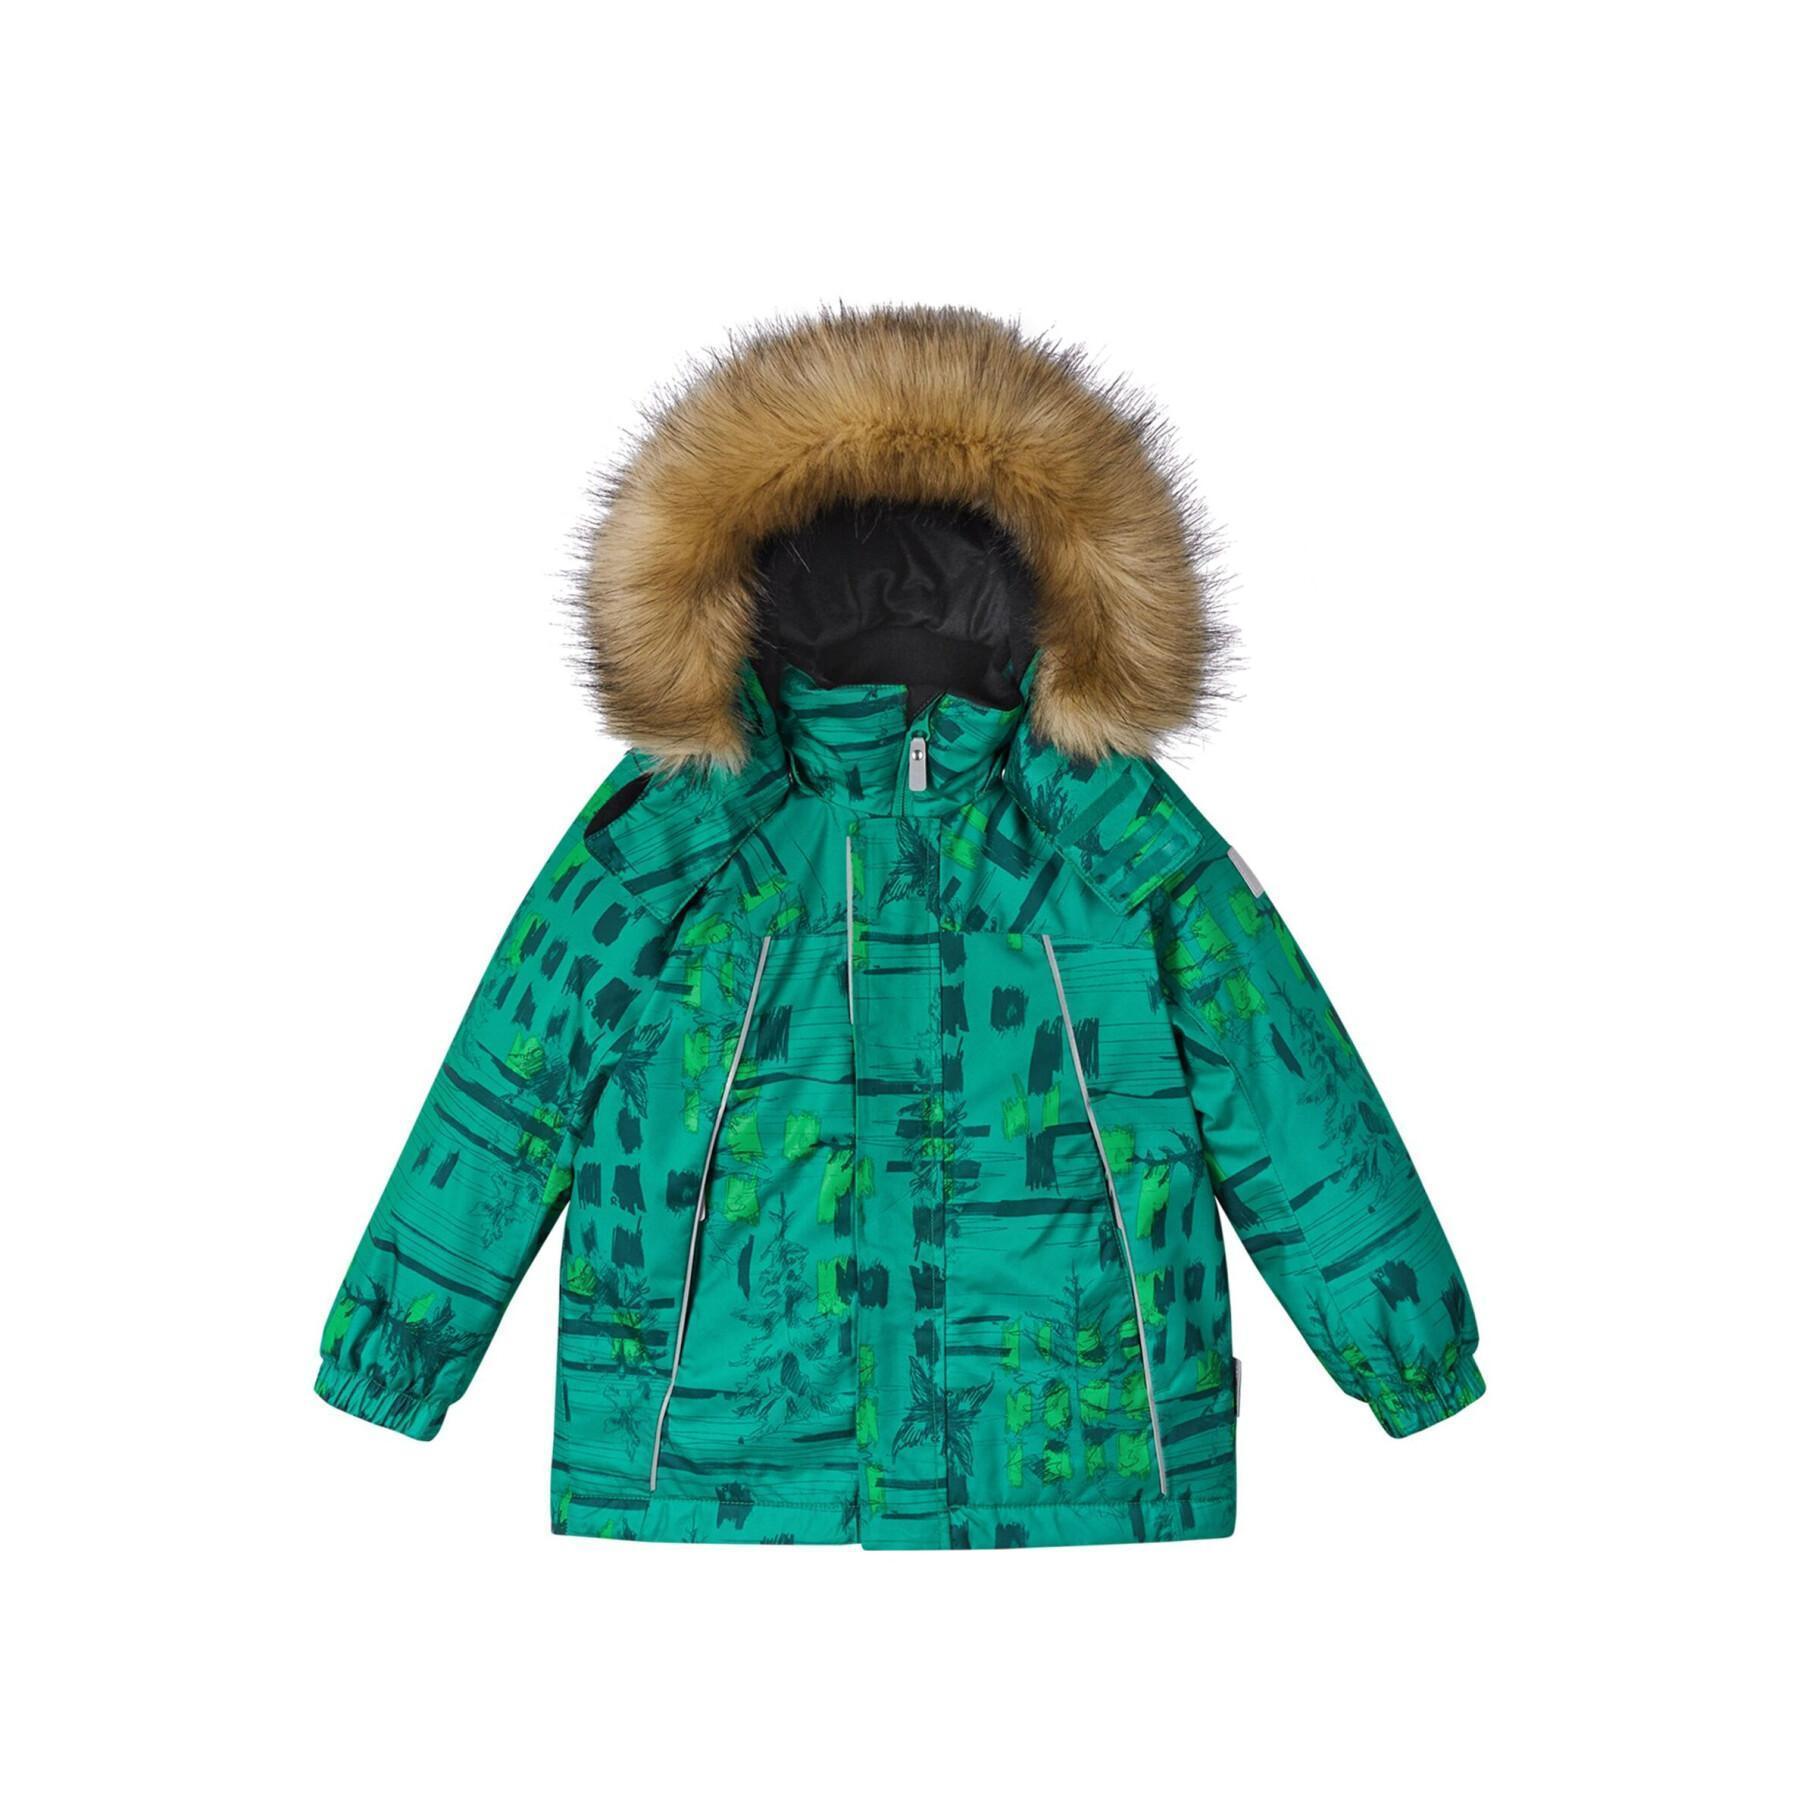 Waterproof jacket for children Reima Reima tec Niisi